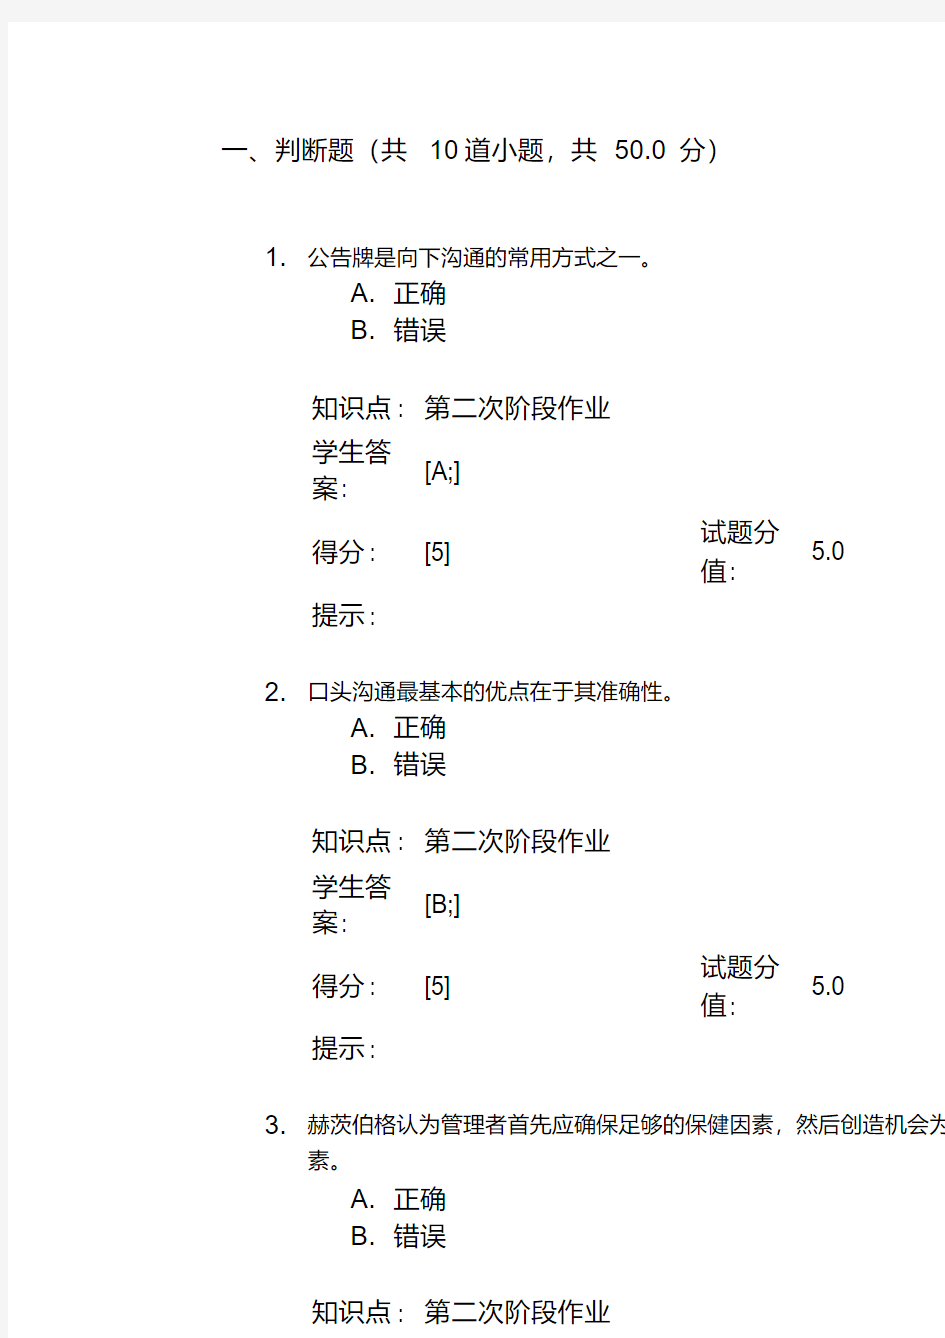 北京邮电大学网络教育学院管理学第二阶段作业及答案